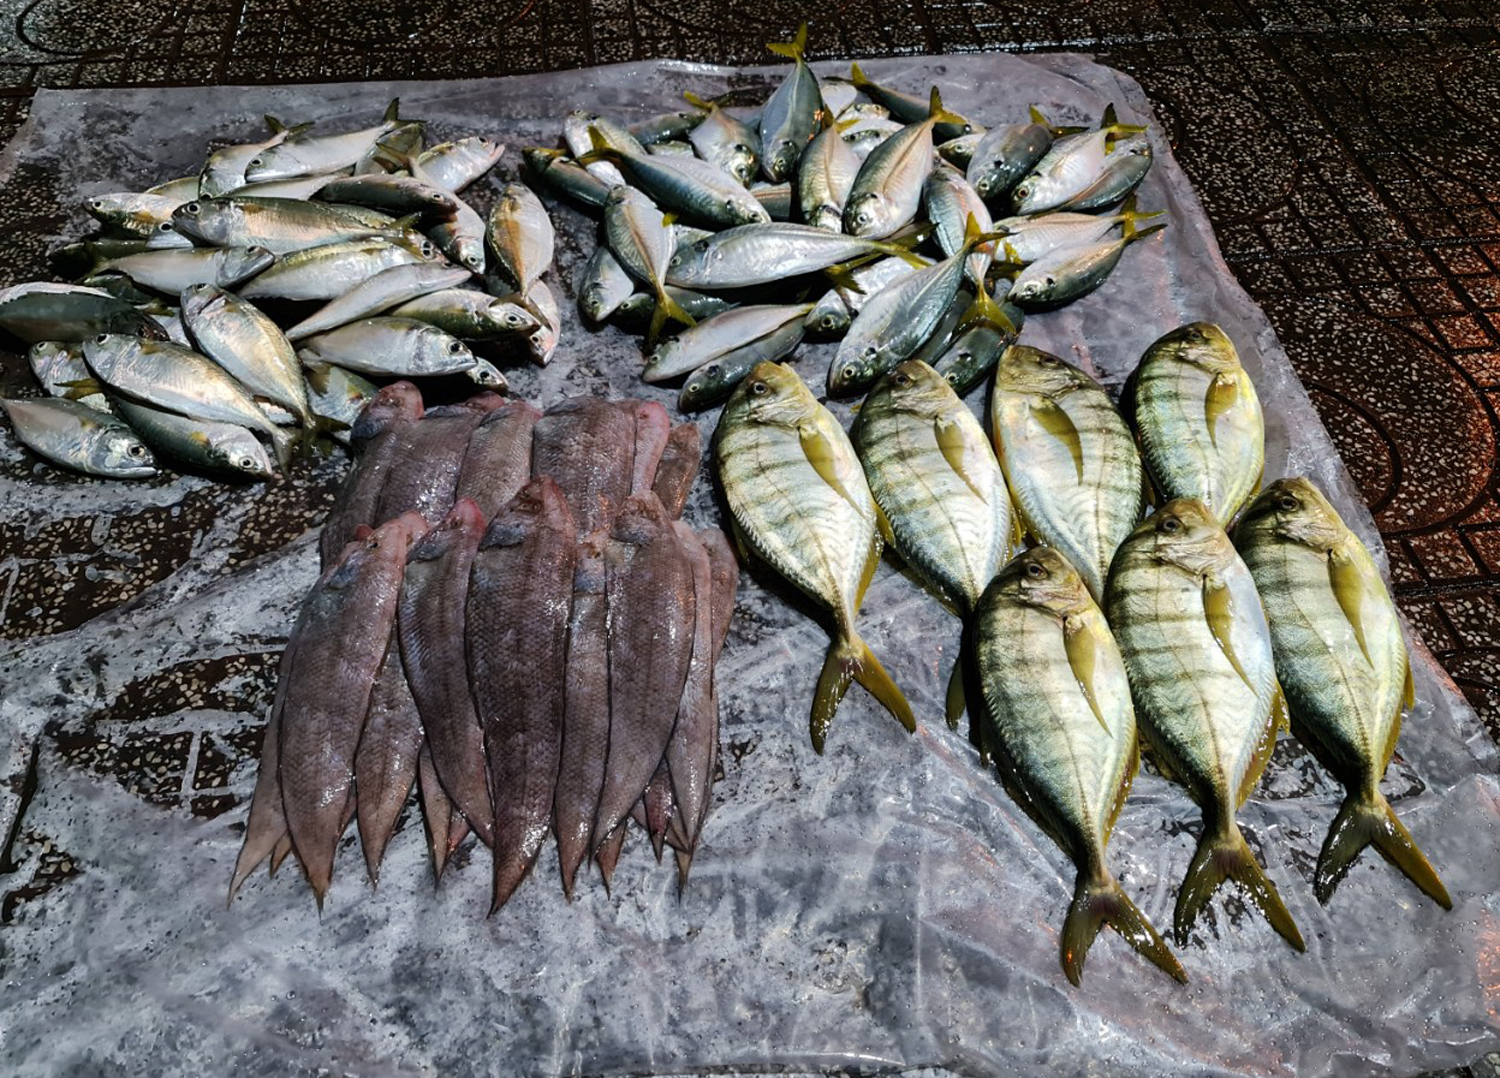 Du khách nườm nượp đến chợ Hà Tiên mua cá, mực lúc rạng sáng - 8